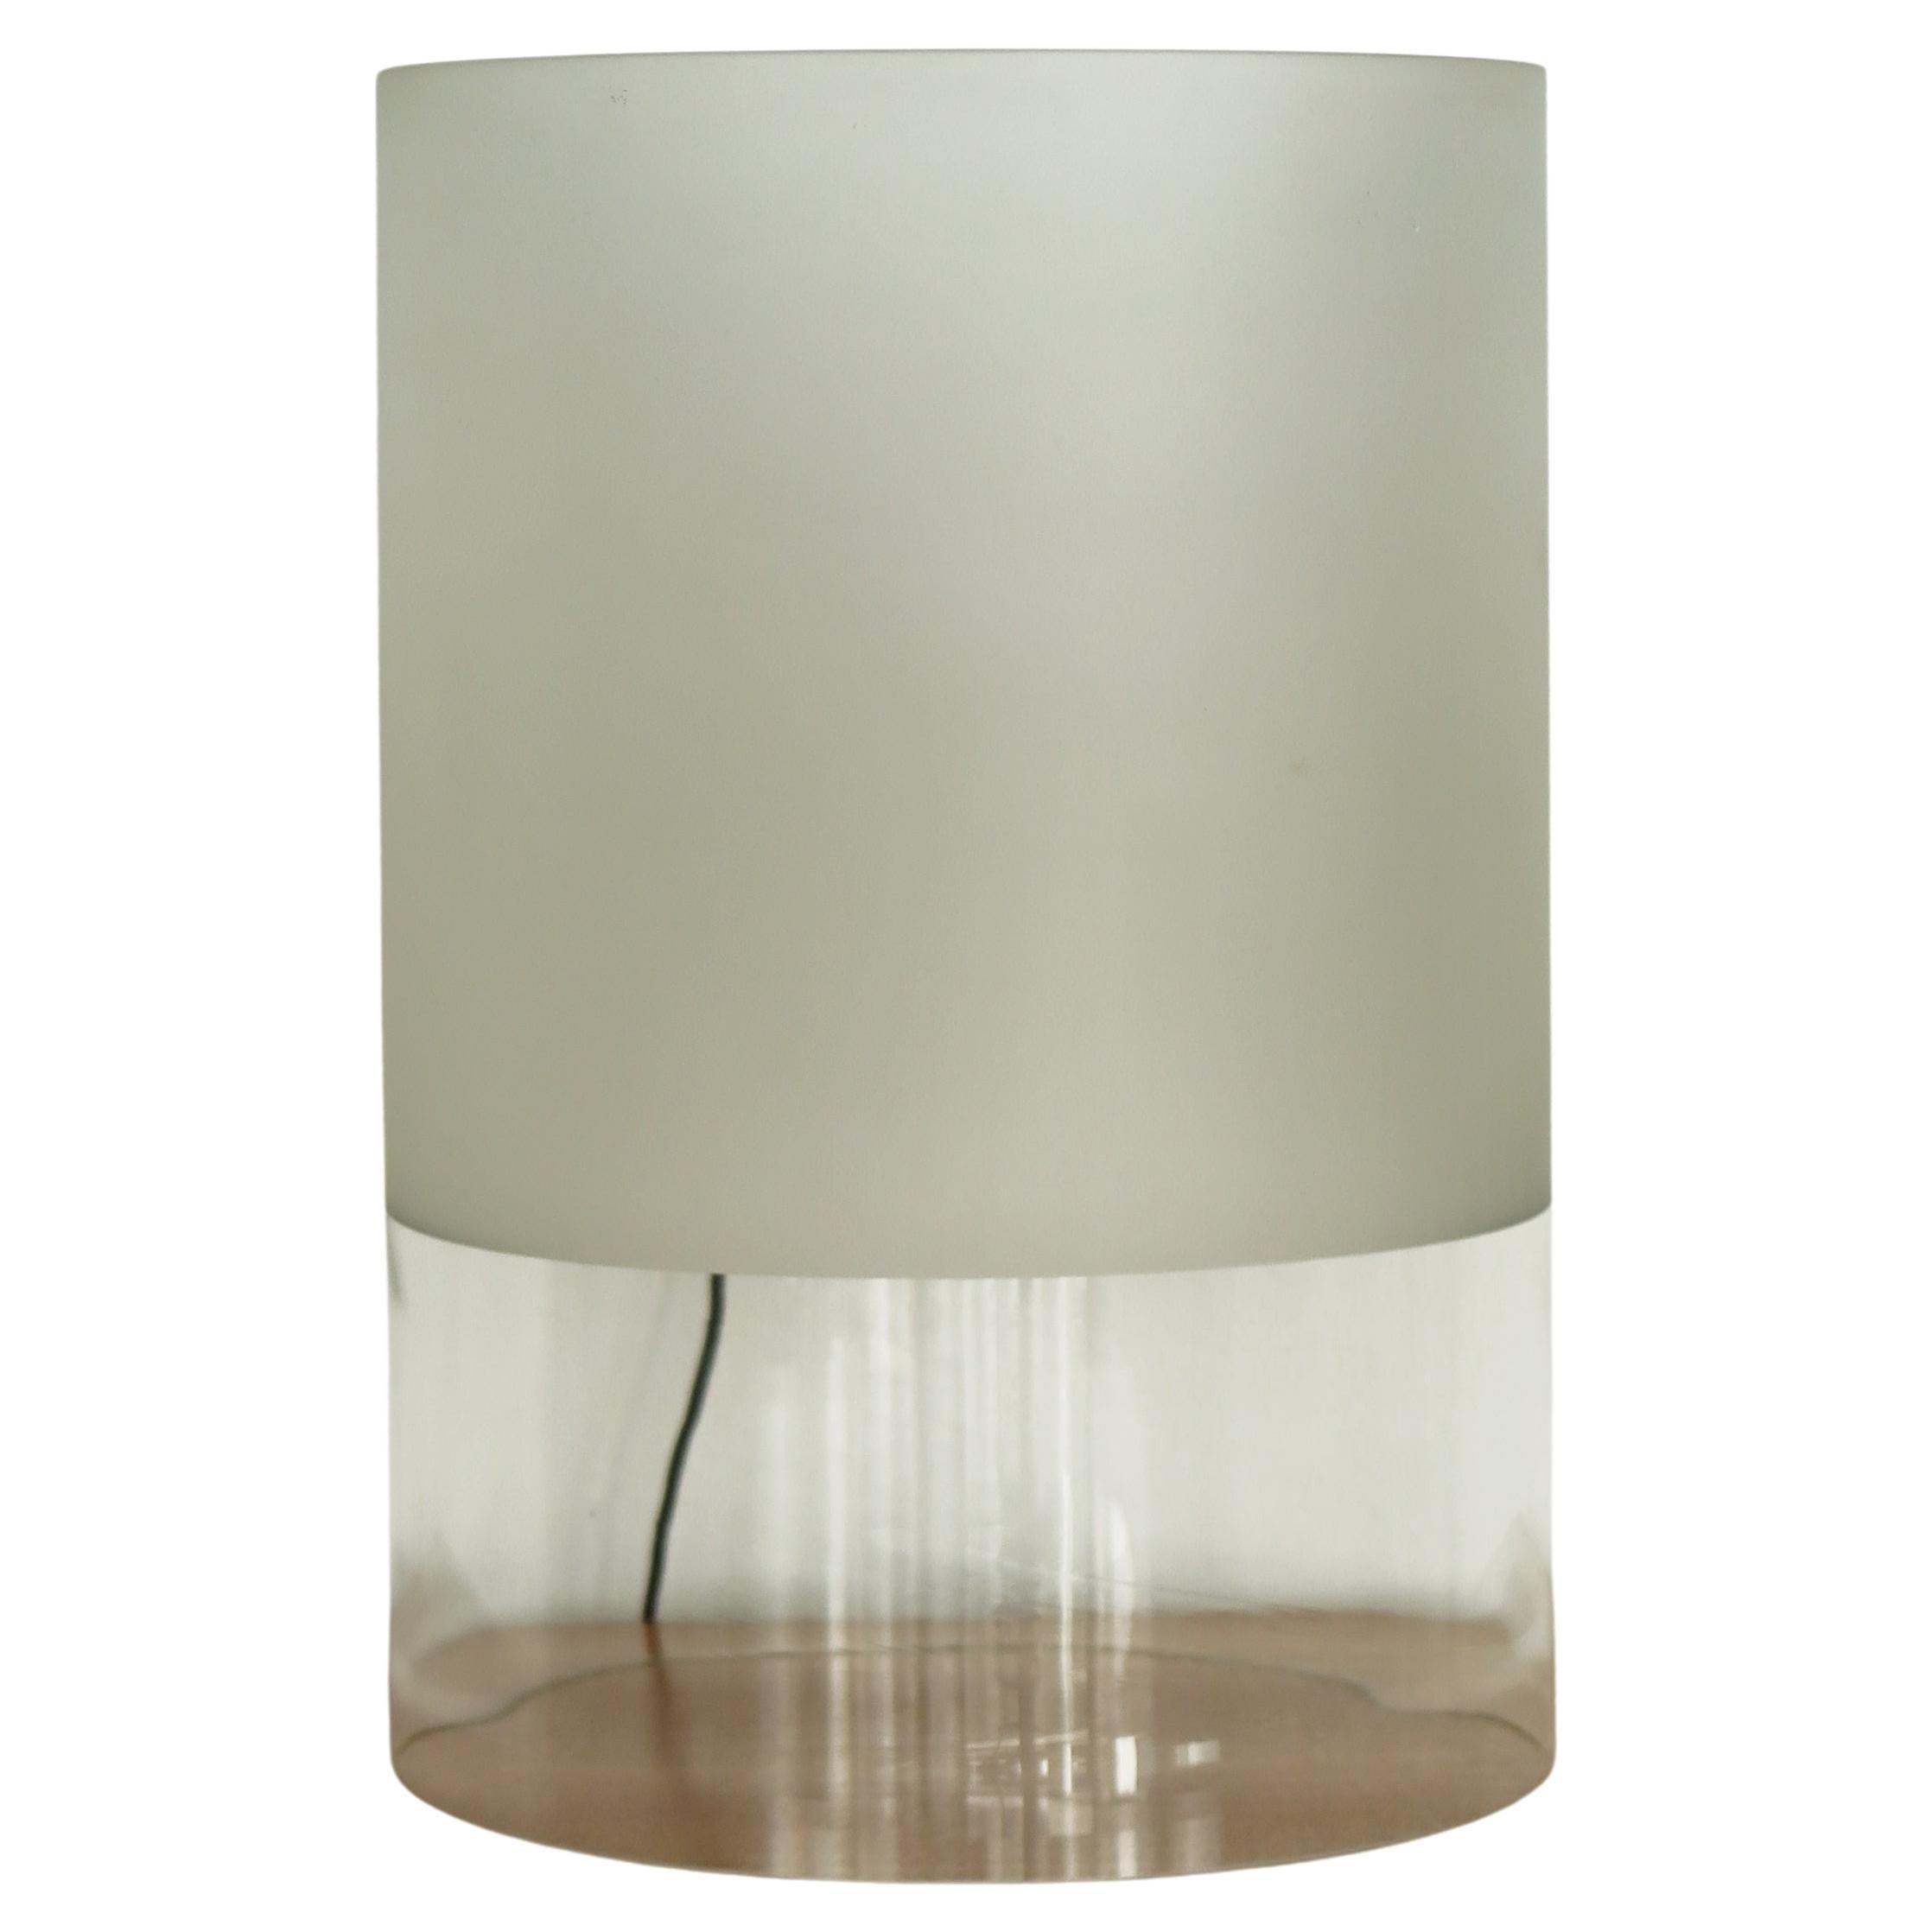 Guido Rosati for Fontana Arte "Fatua" Table Lamp in Blown Glass 1970s For Sale